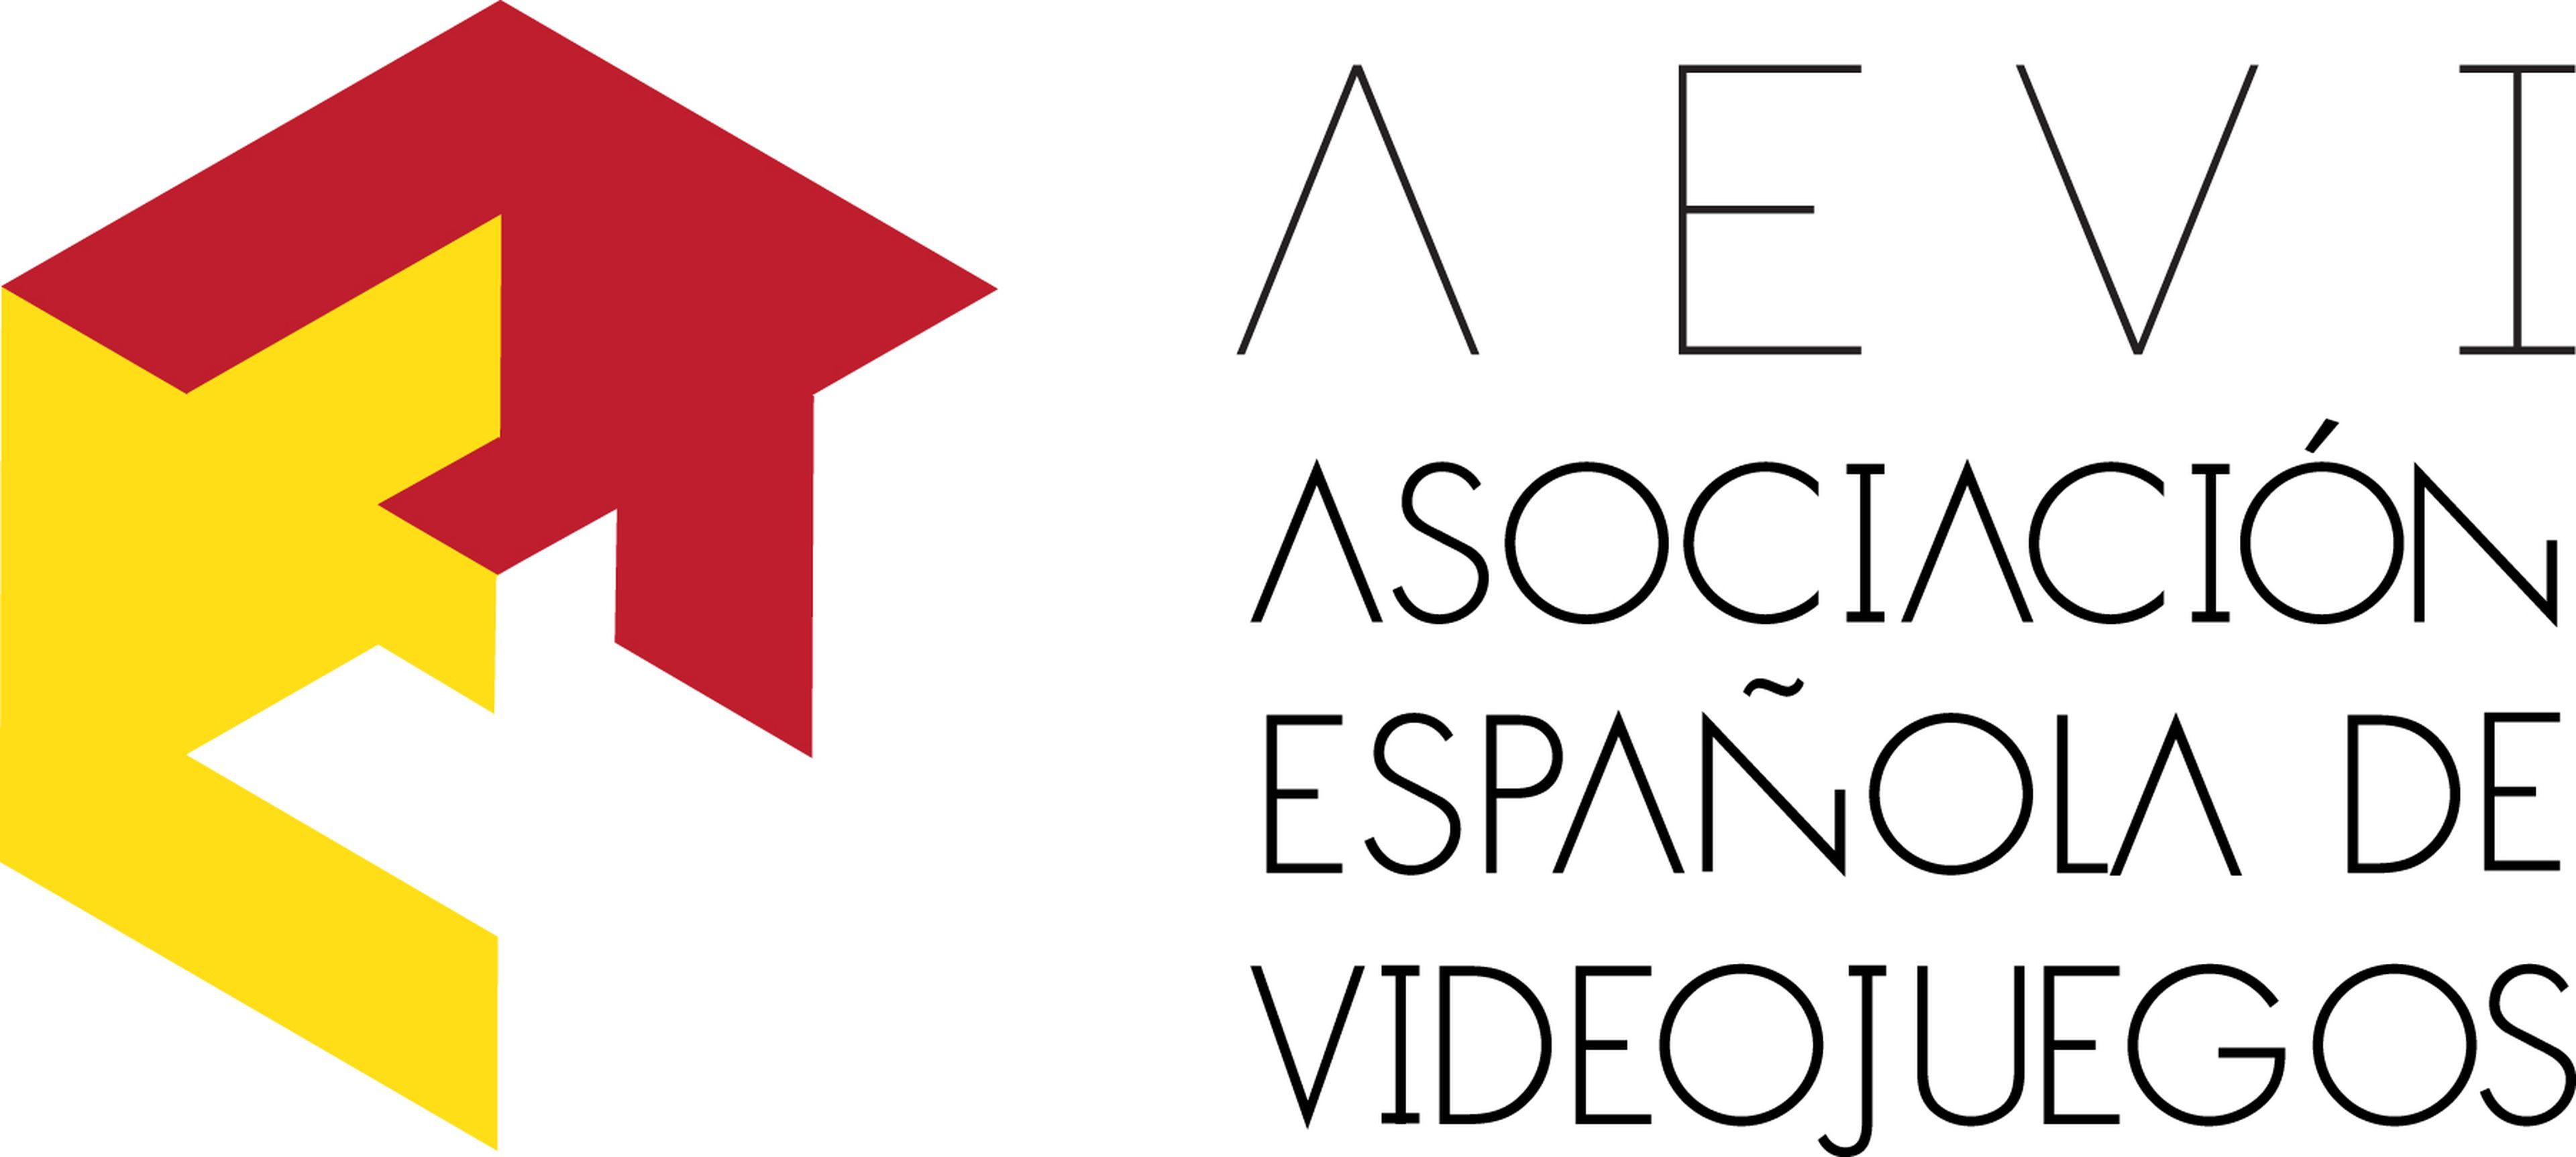 Nace la Asociación Española de Videojuegos